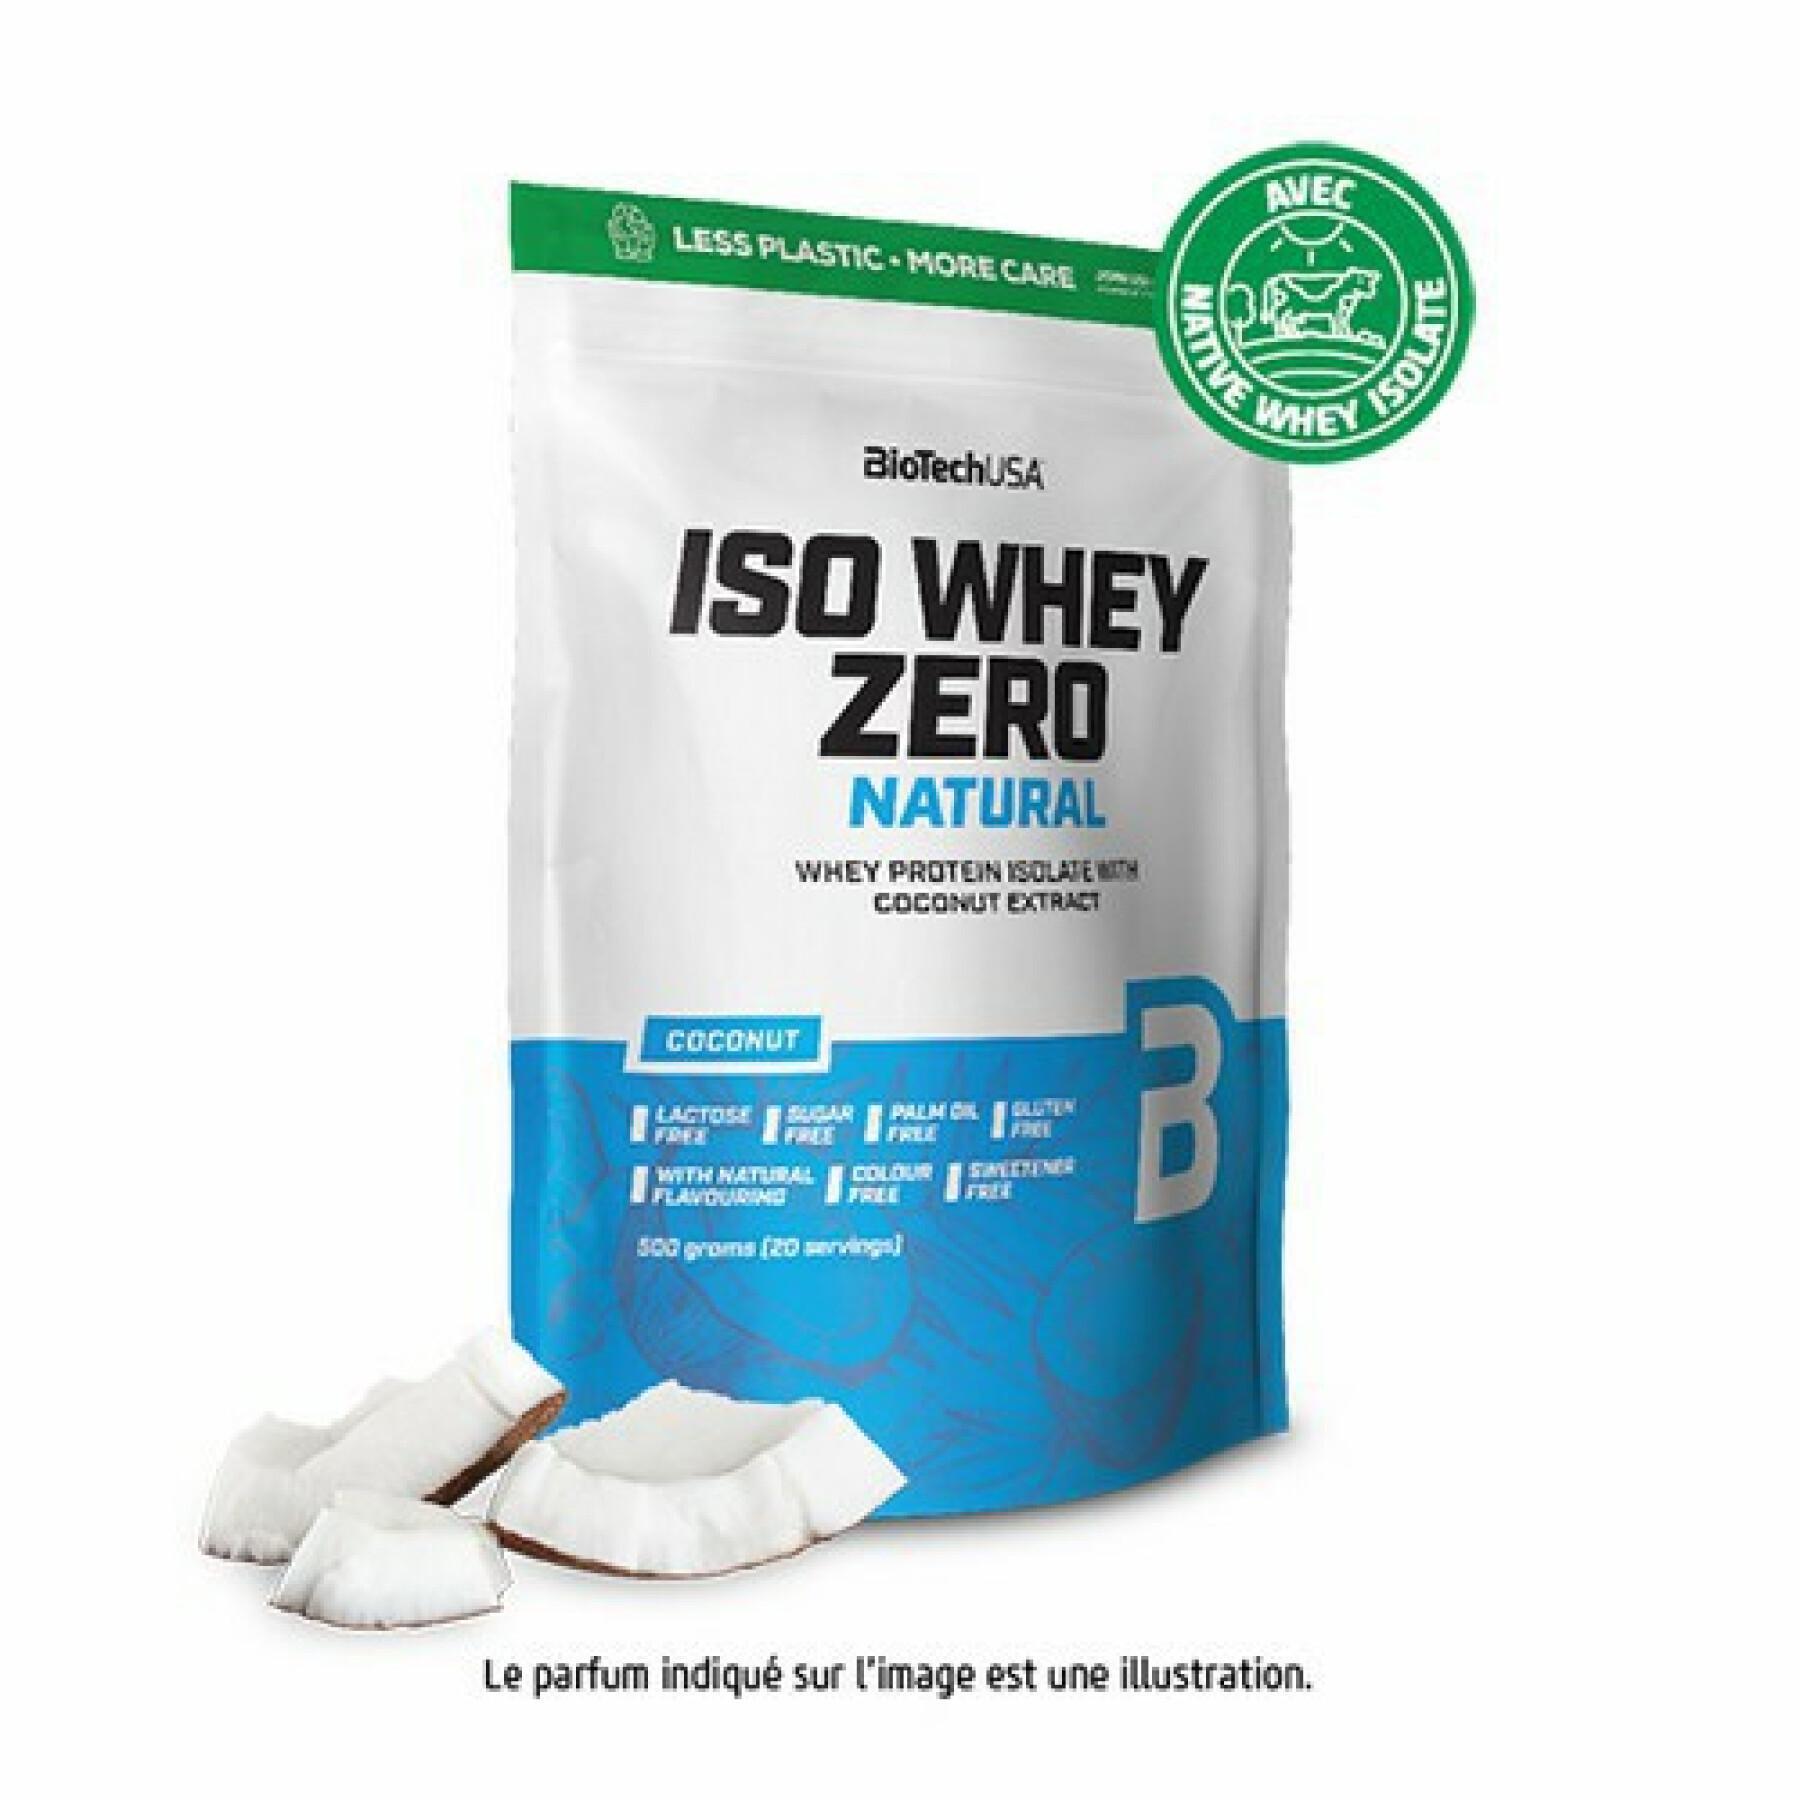 Paquete de 10 bolsas de proteínas Biotech USA iso whey zero lactose free - Coco - 500g